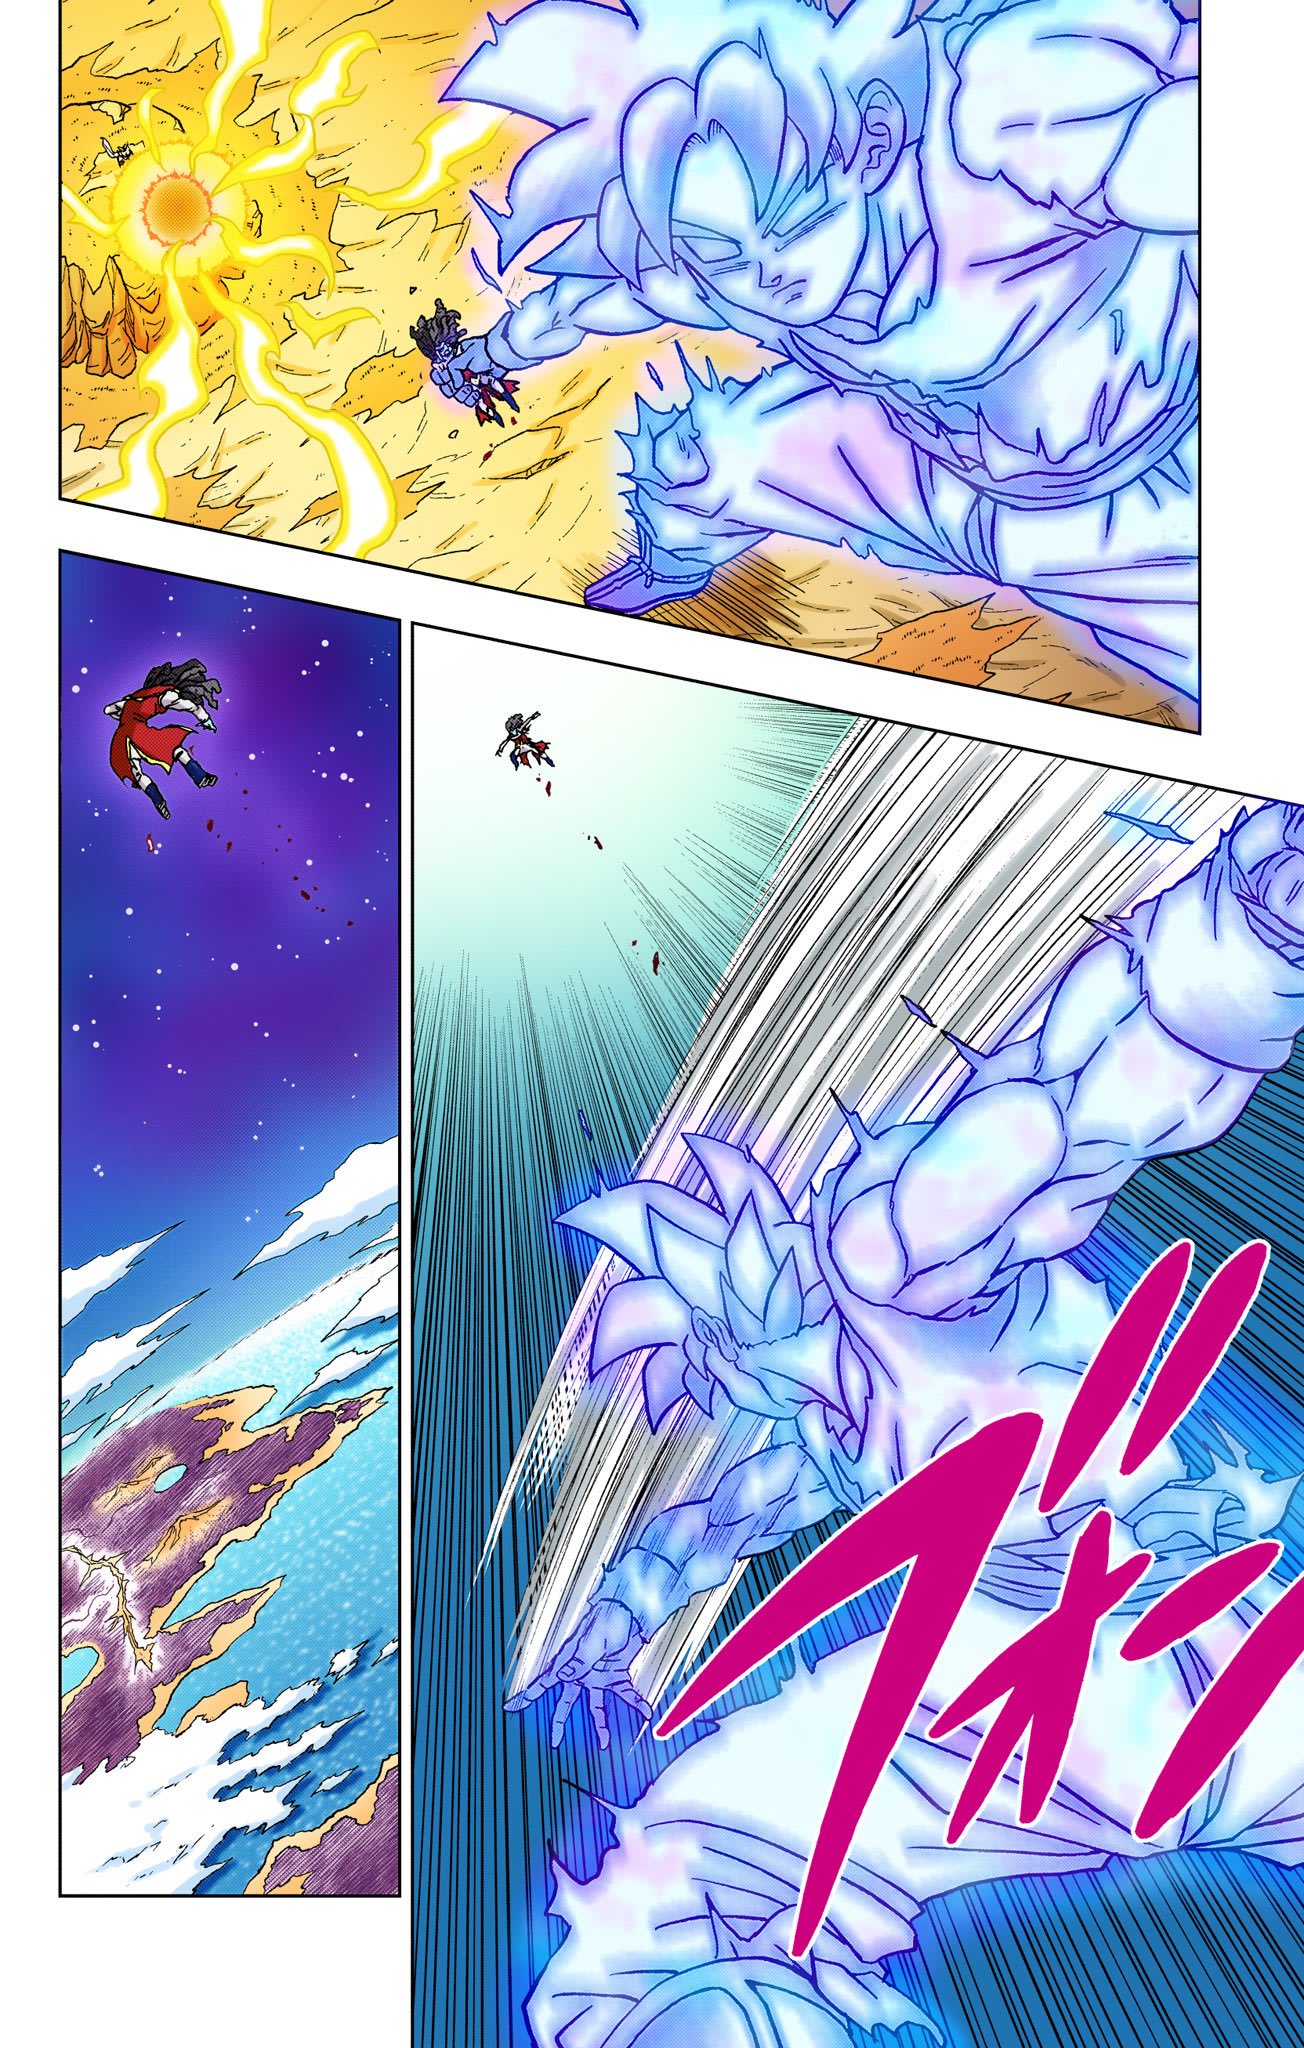 DBnotes on X: "Dragon Ball Super volumen 20 a color: Goku lanza a Gas y  Granola ataca. #DBJunio2023 #DBSVolumen20 #DragonBallSuper #DragonBall  https://t.co/dpafZ8RqpW" / X